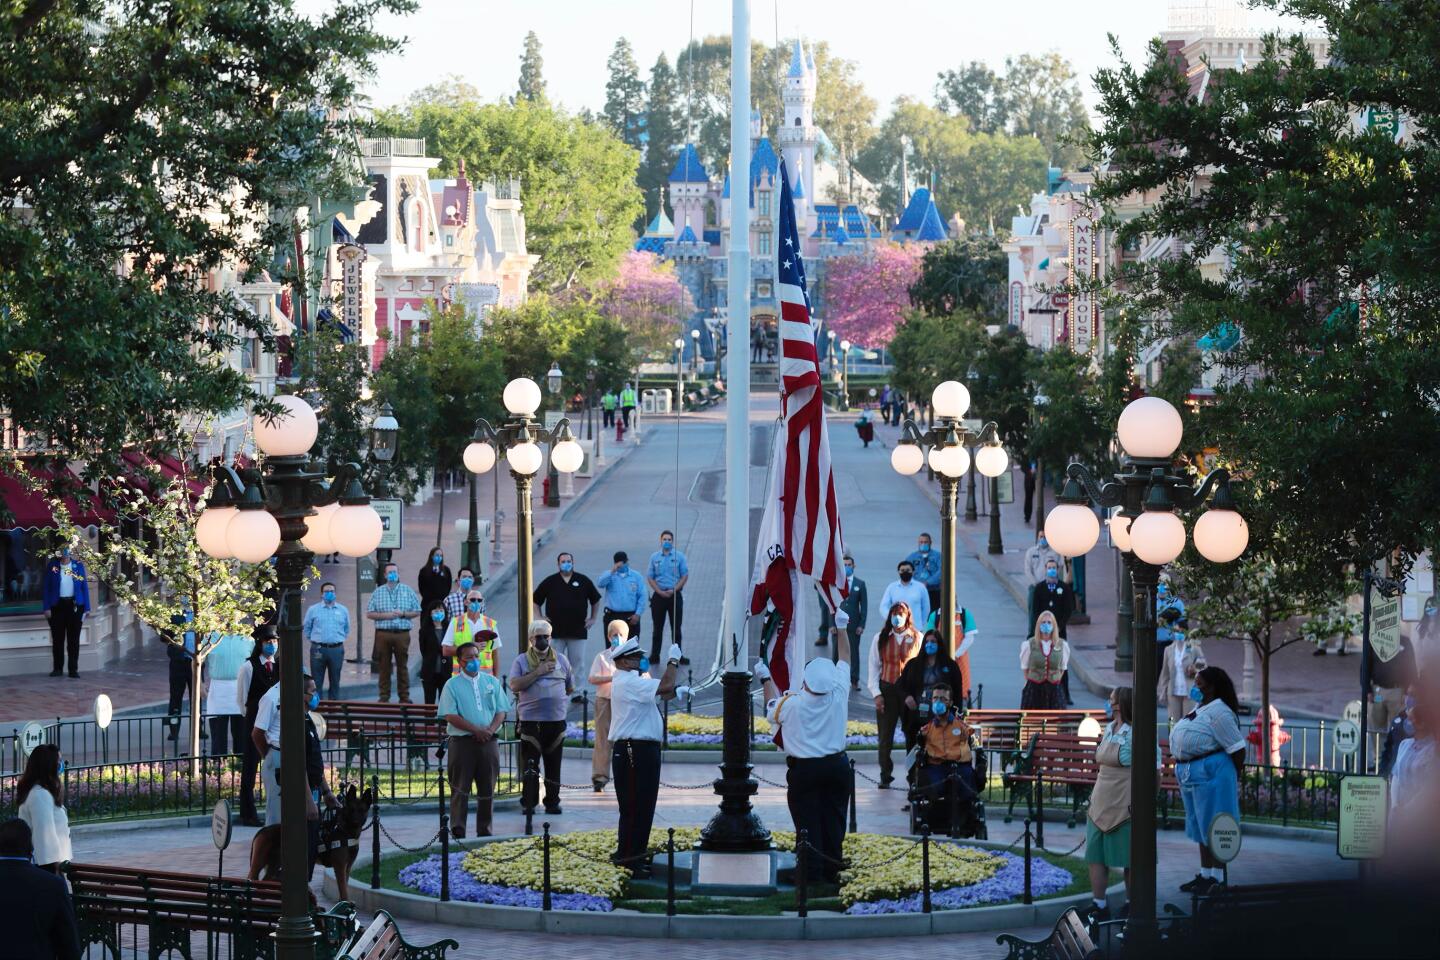 The flag is raised at Disneyland.